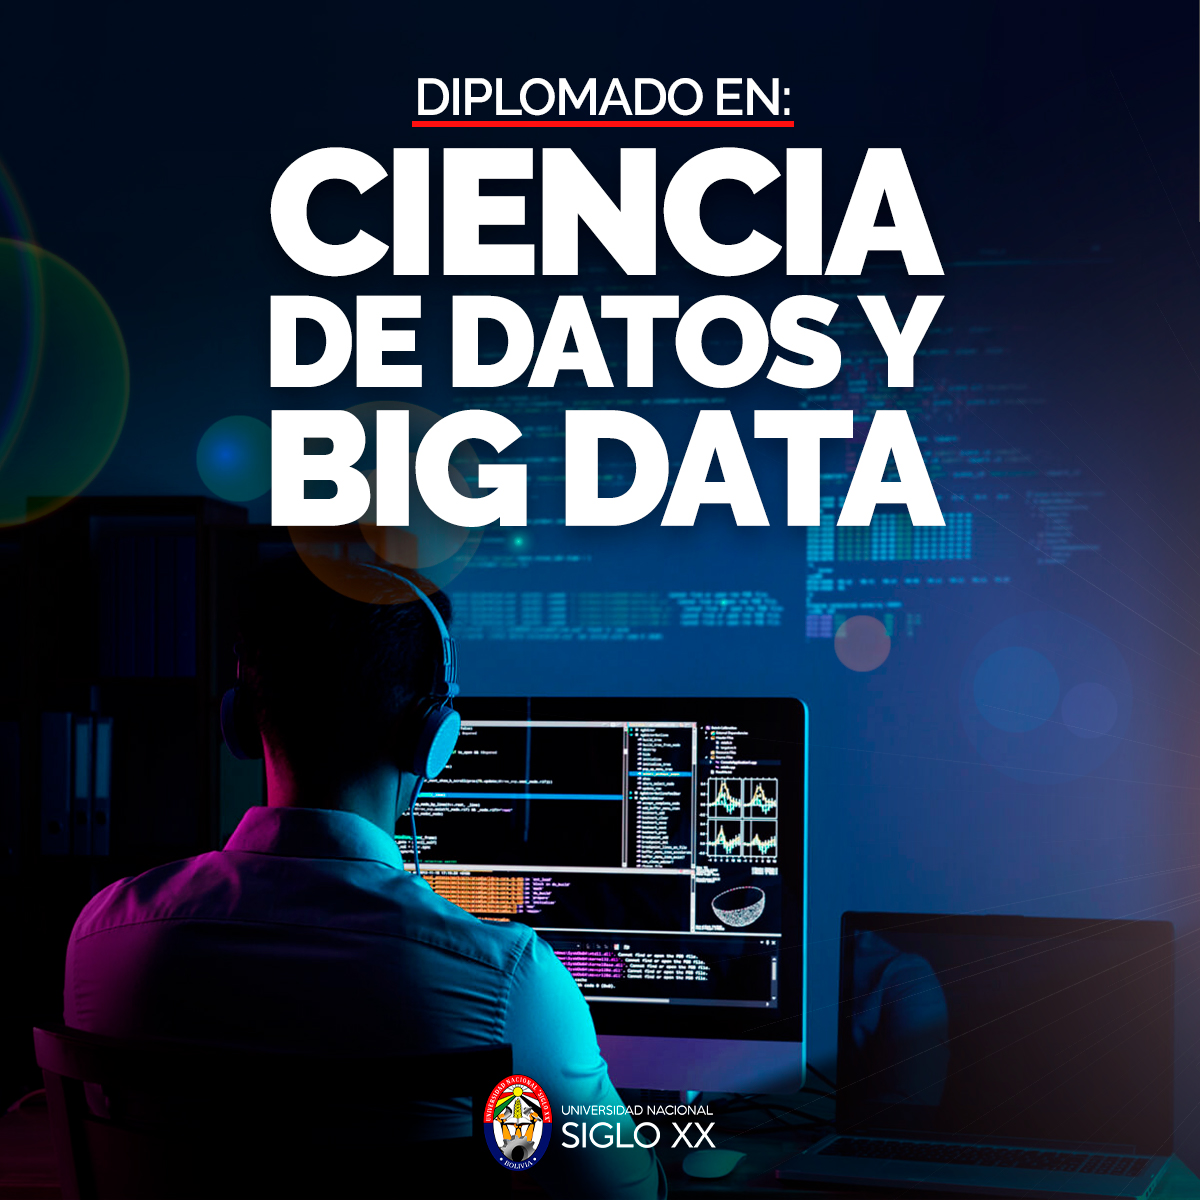 Diplomado DIPLOMADO EN CIENCIA DE DATOS Y BIG DATA